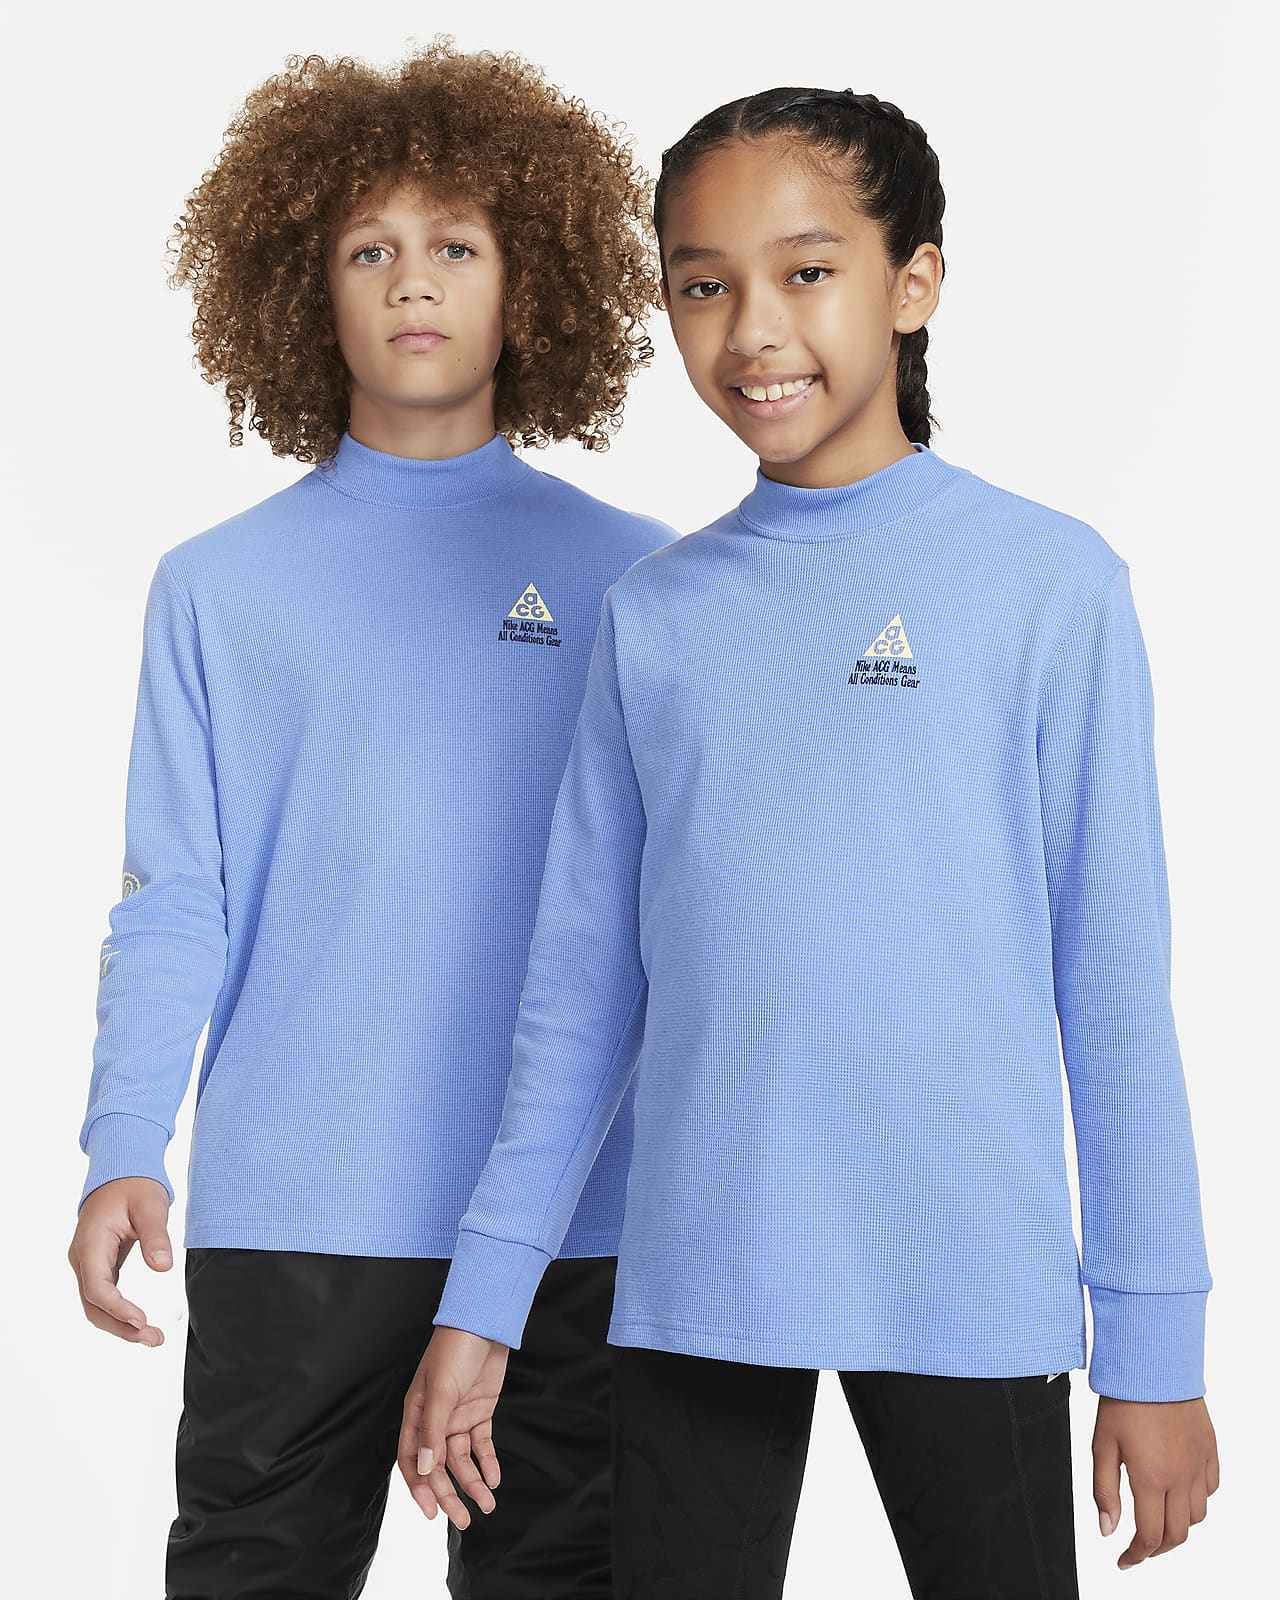 Μακρυμάνικη μπλούζα από πικέ ύφασμα σε ριχτή γραμμή Nike ACG για μεγάλα παιδιά